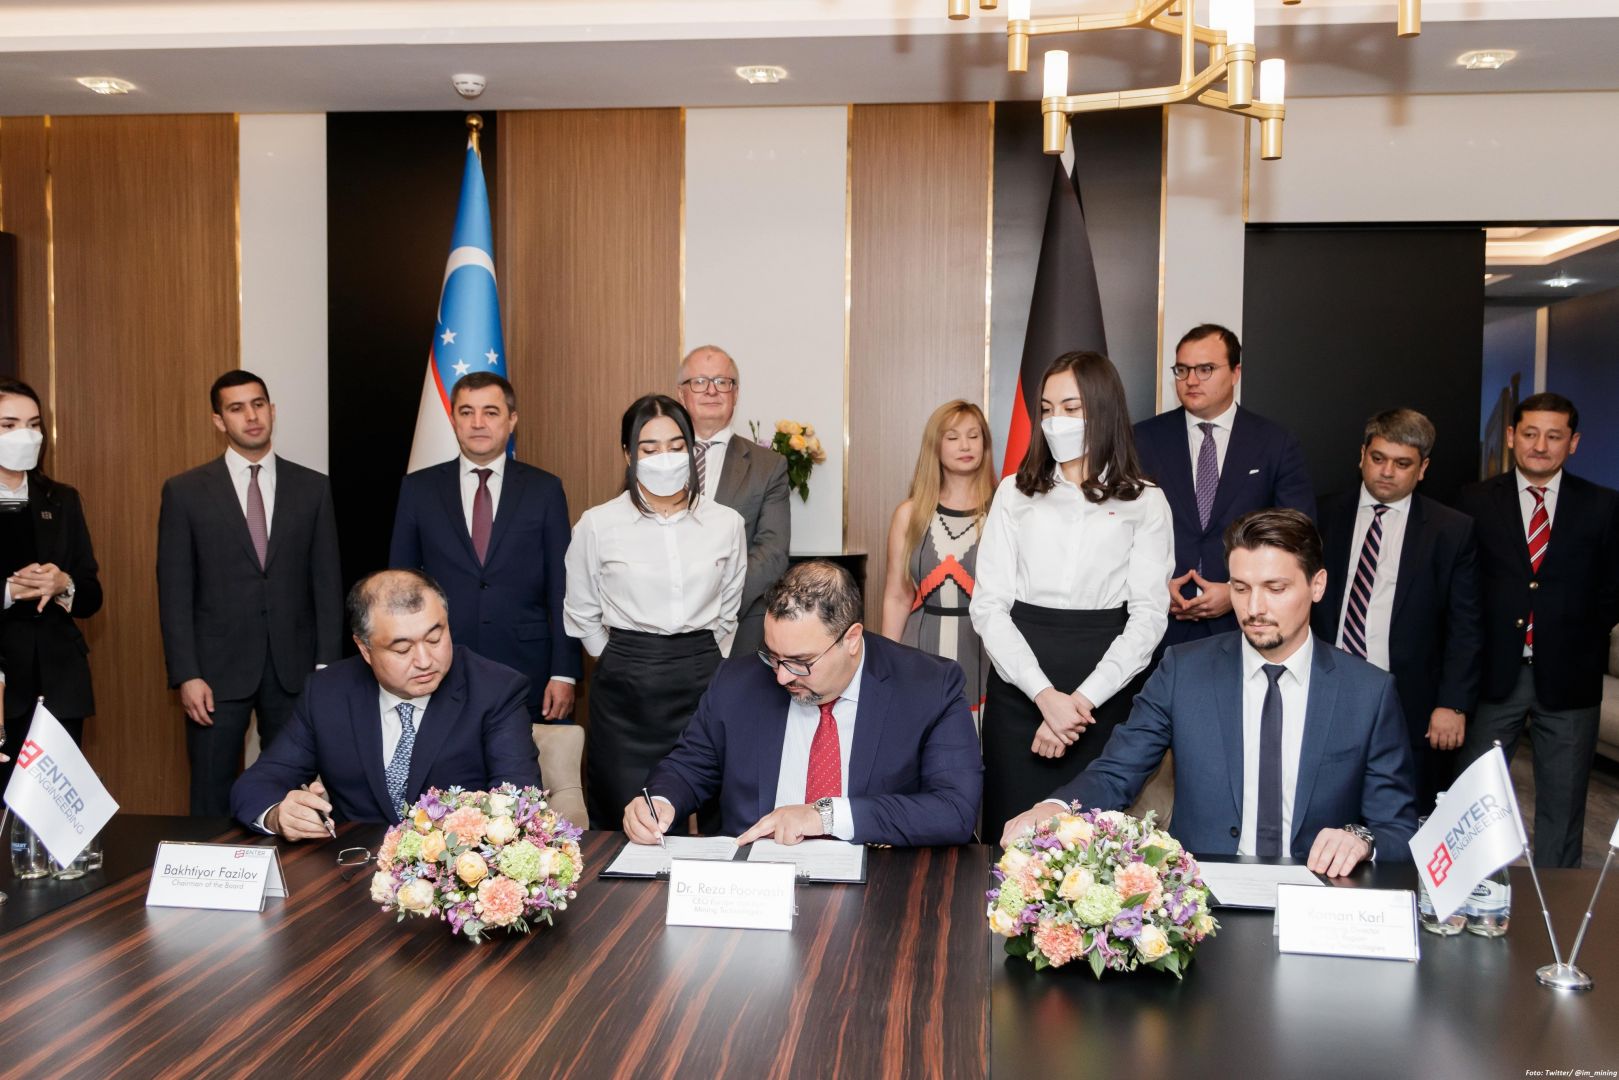 Ein usbekisches Unternehmen hat eine Vereinbarung mit der deutschen Thyssenkrupp im Zusammenhang mit dem Bau eines Bergbaukomplexes unterzeichnet